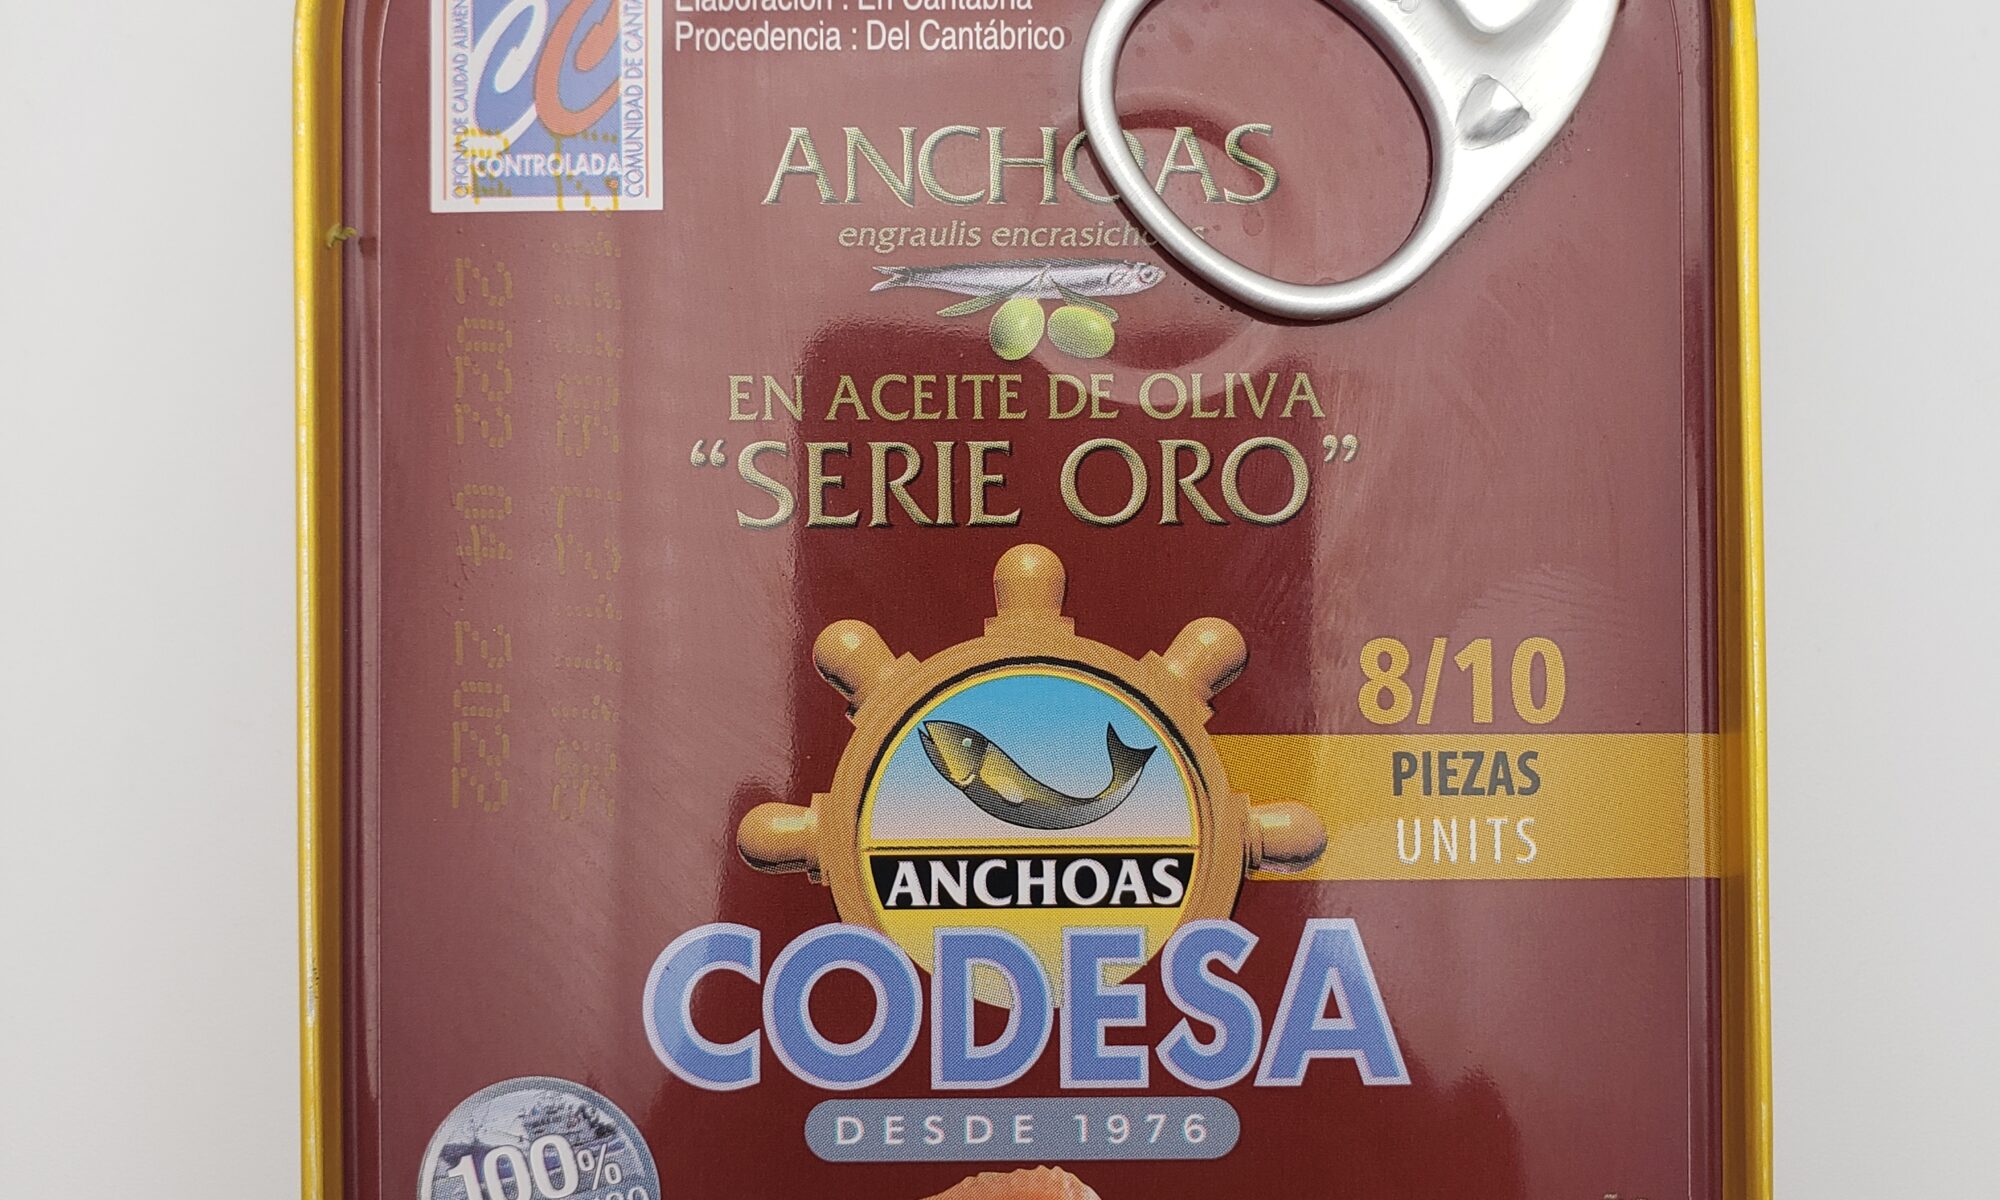 Image of codesa anchovies